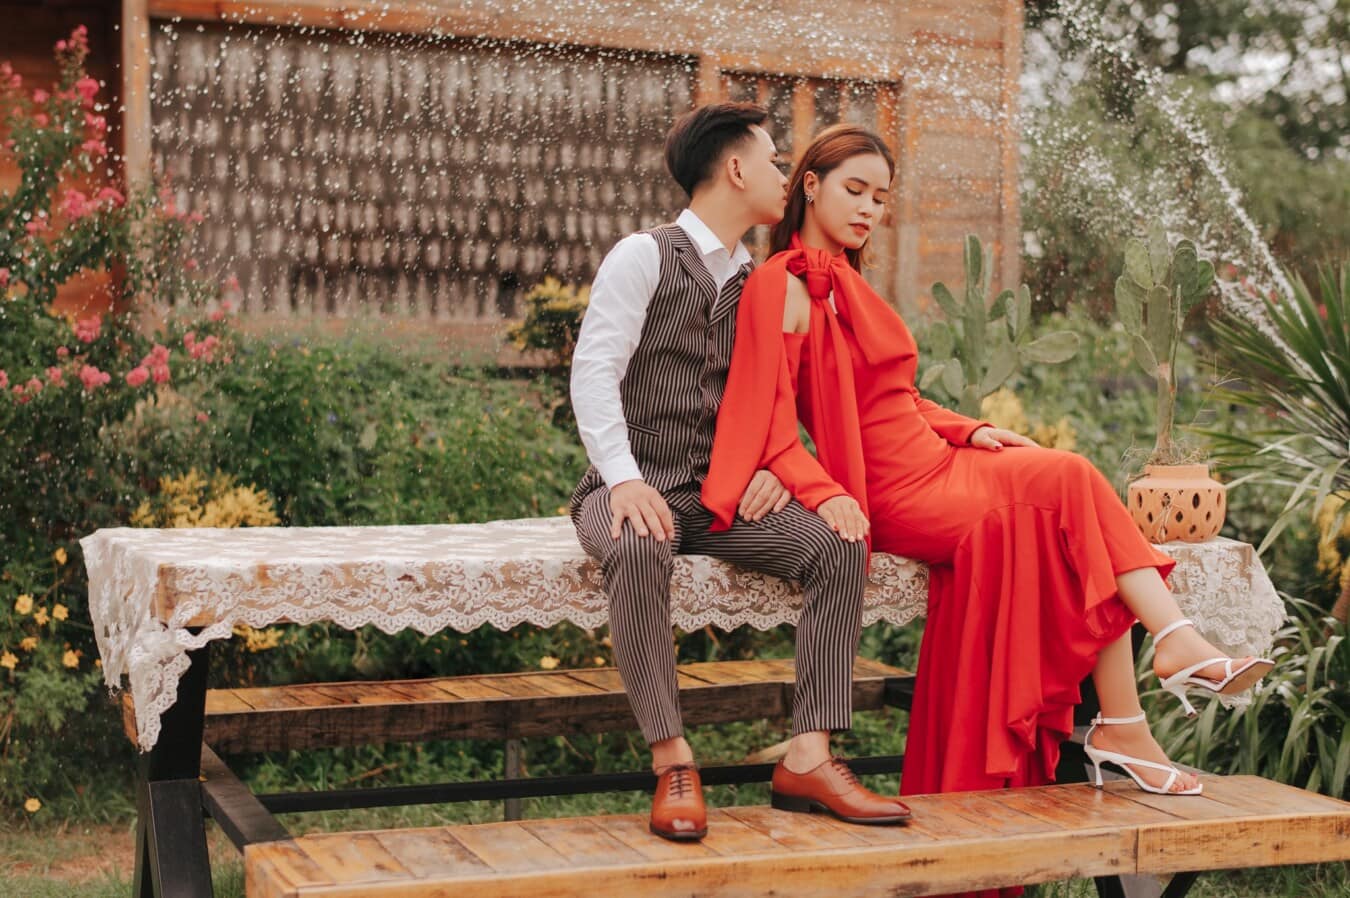 přítelkyně, Asijské, přítel, manželka, ženich, manžel, nevěsta, svatební šaty, červená, smoking oblek